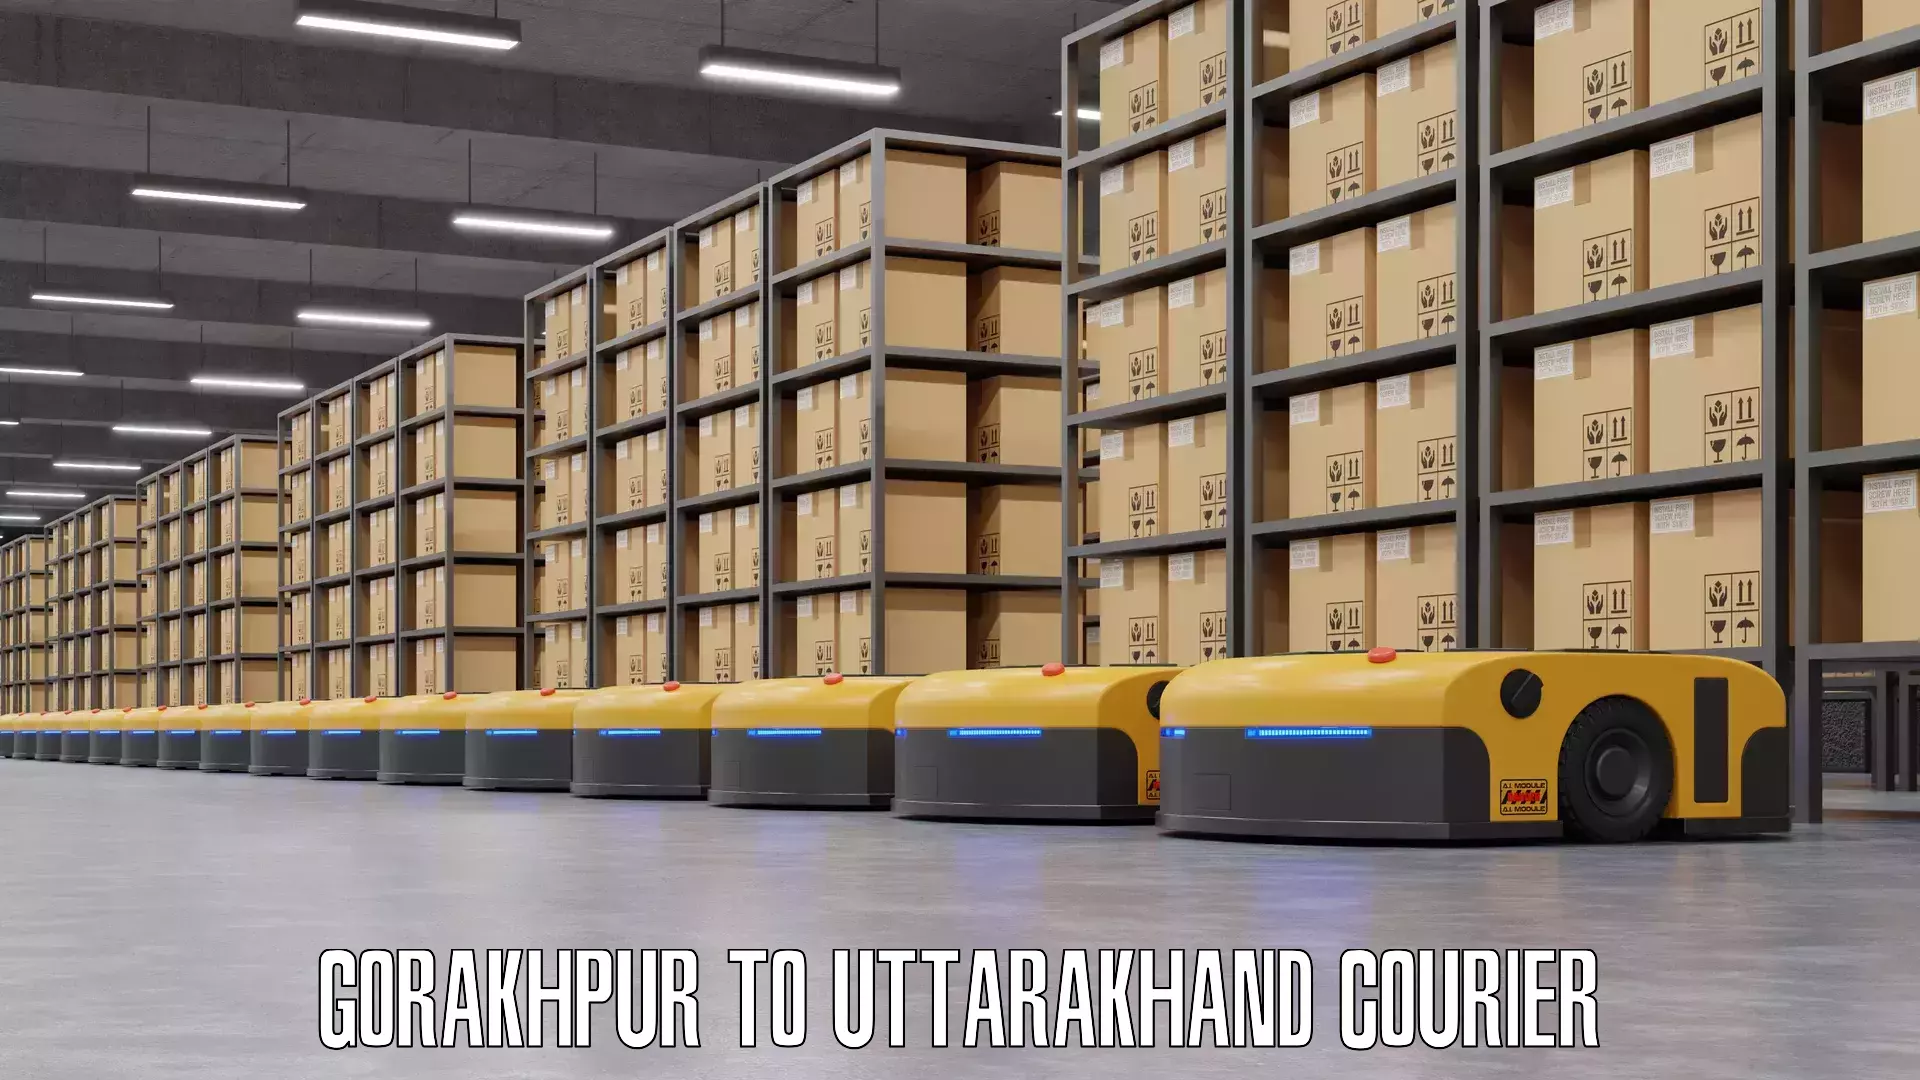 Nationwide luggage courier Gorakhpur to Uttarakhand